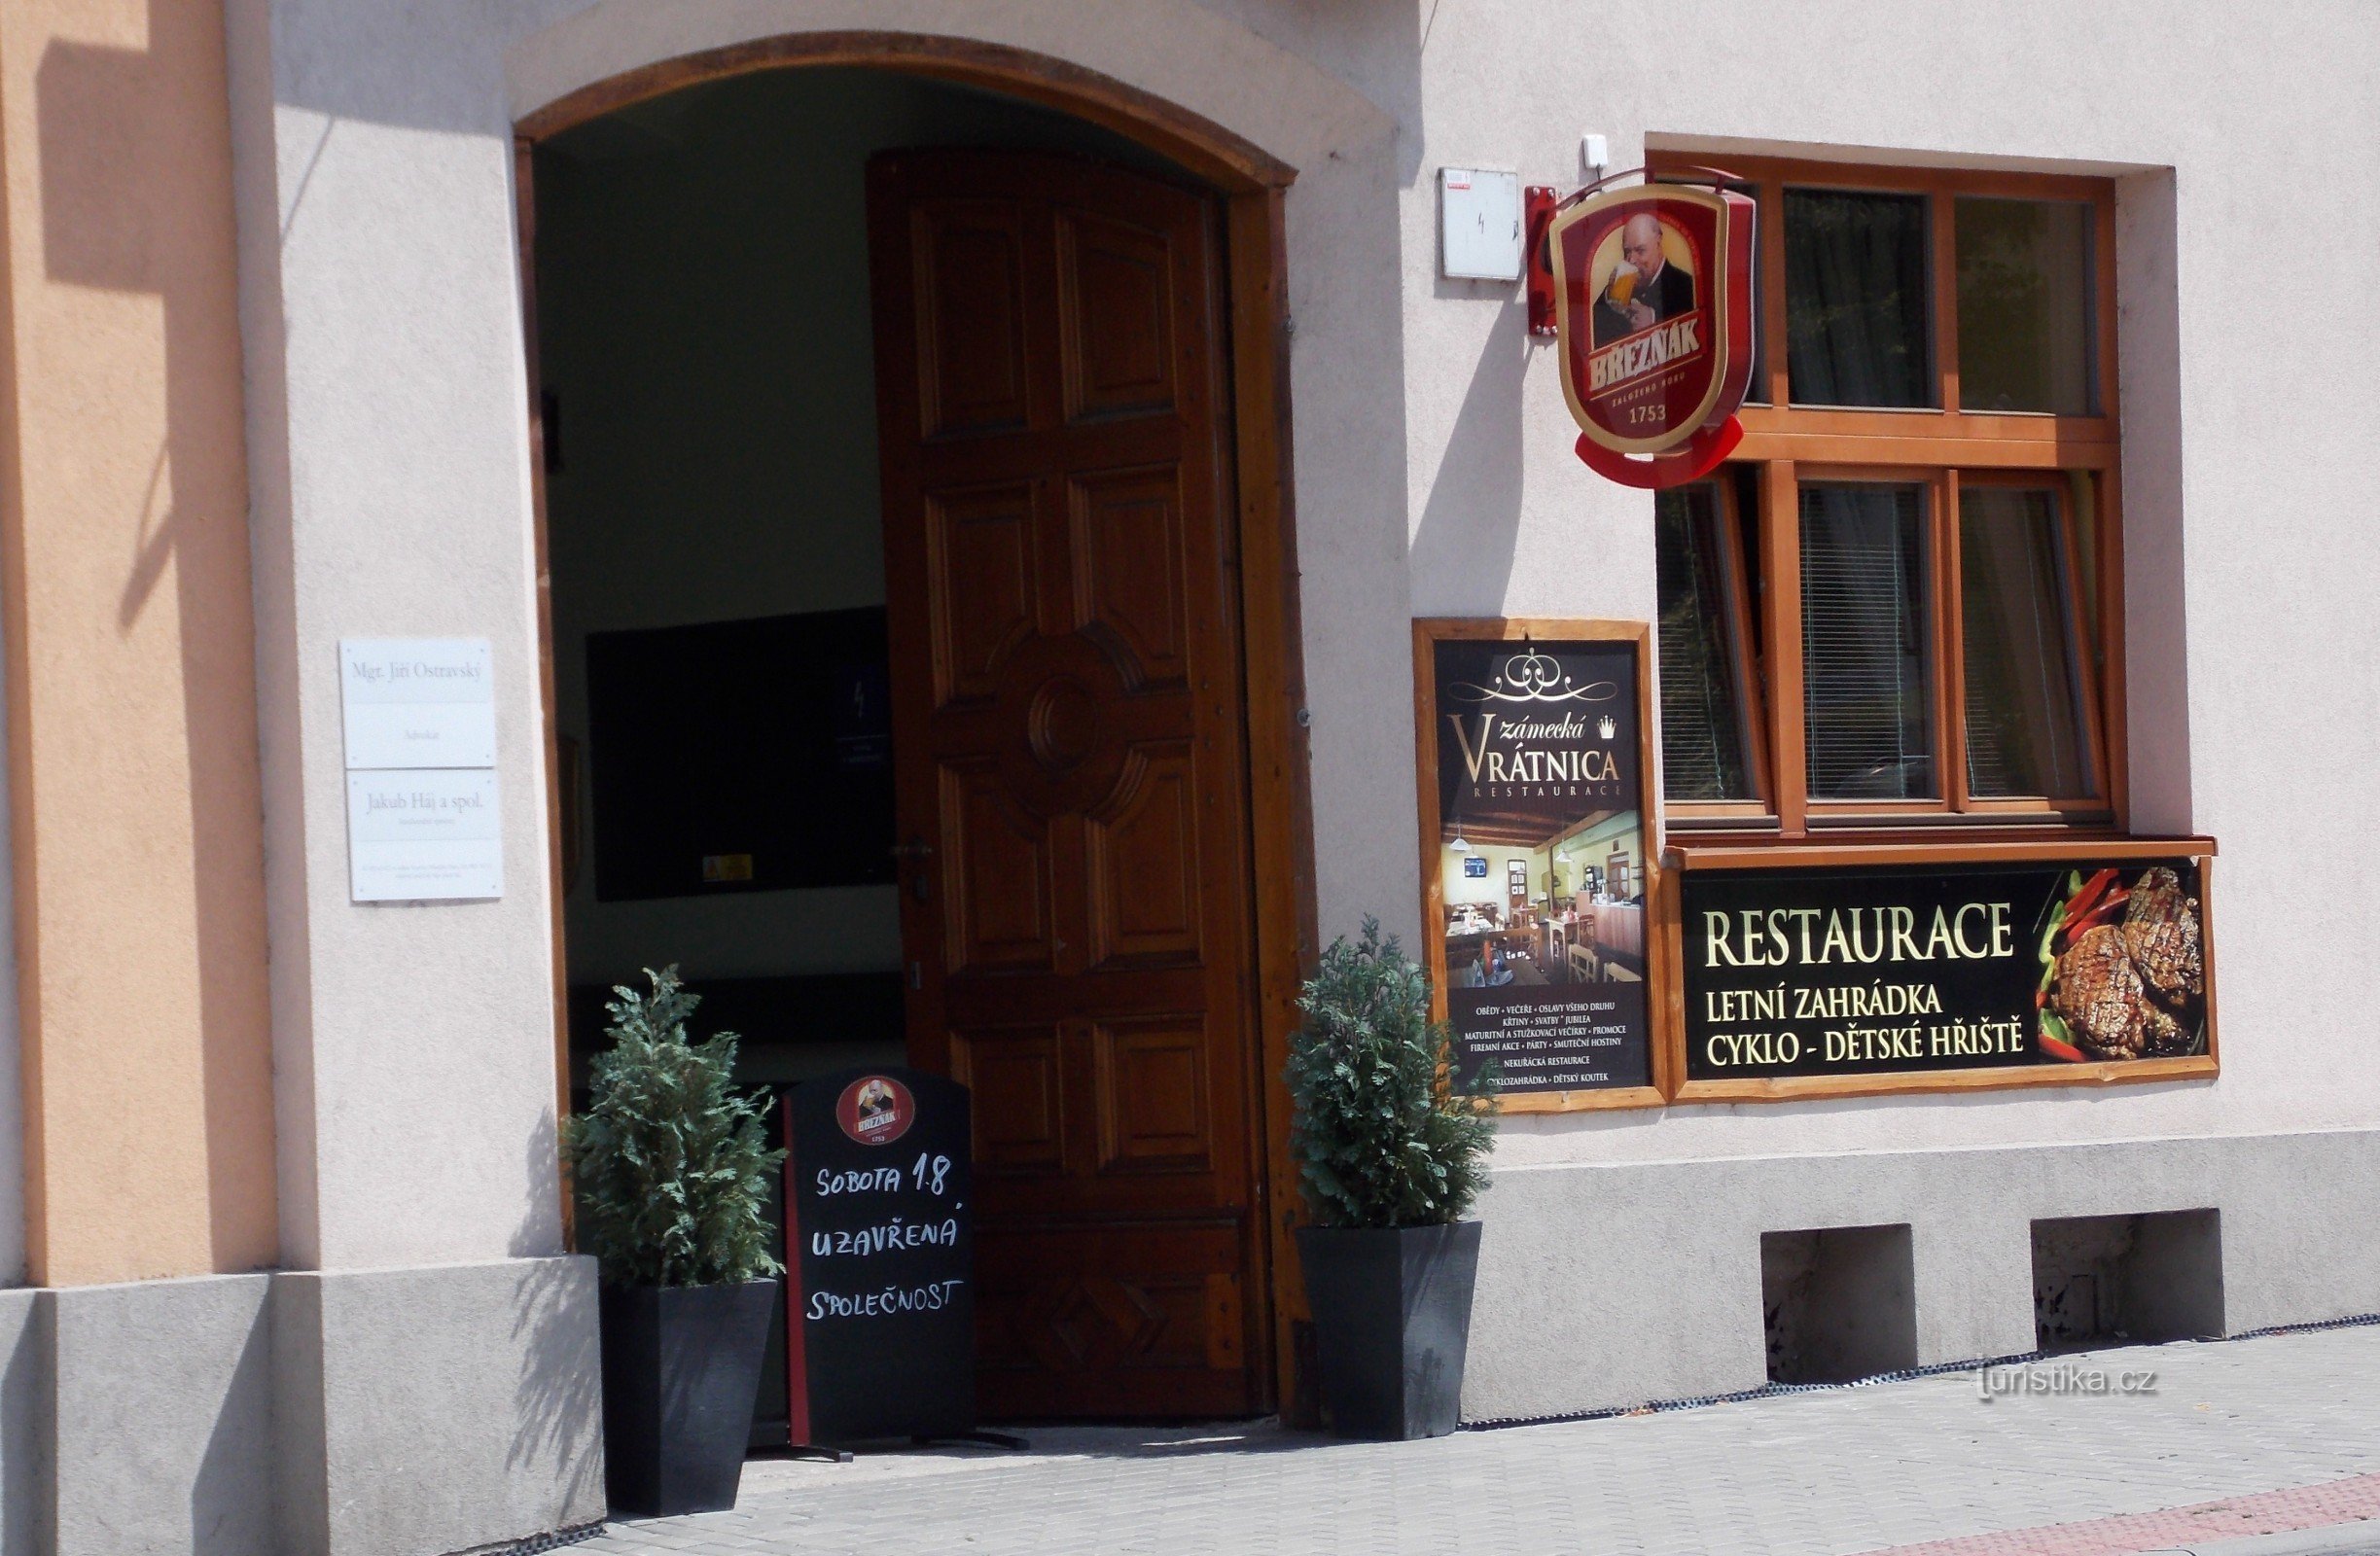 Restaurant Kasteel Poortgebouw in Vizovice